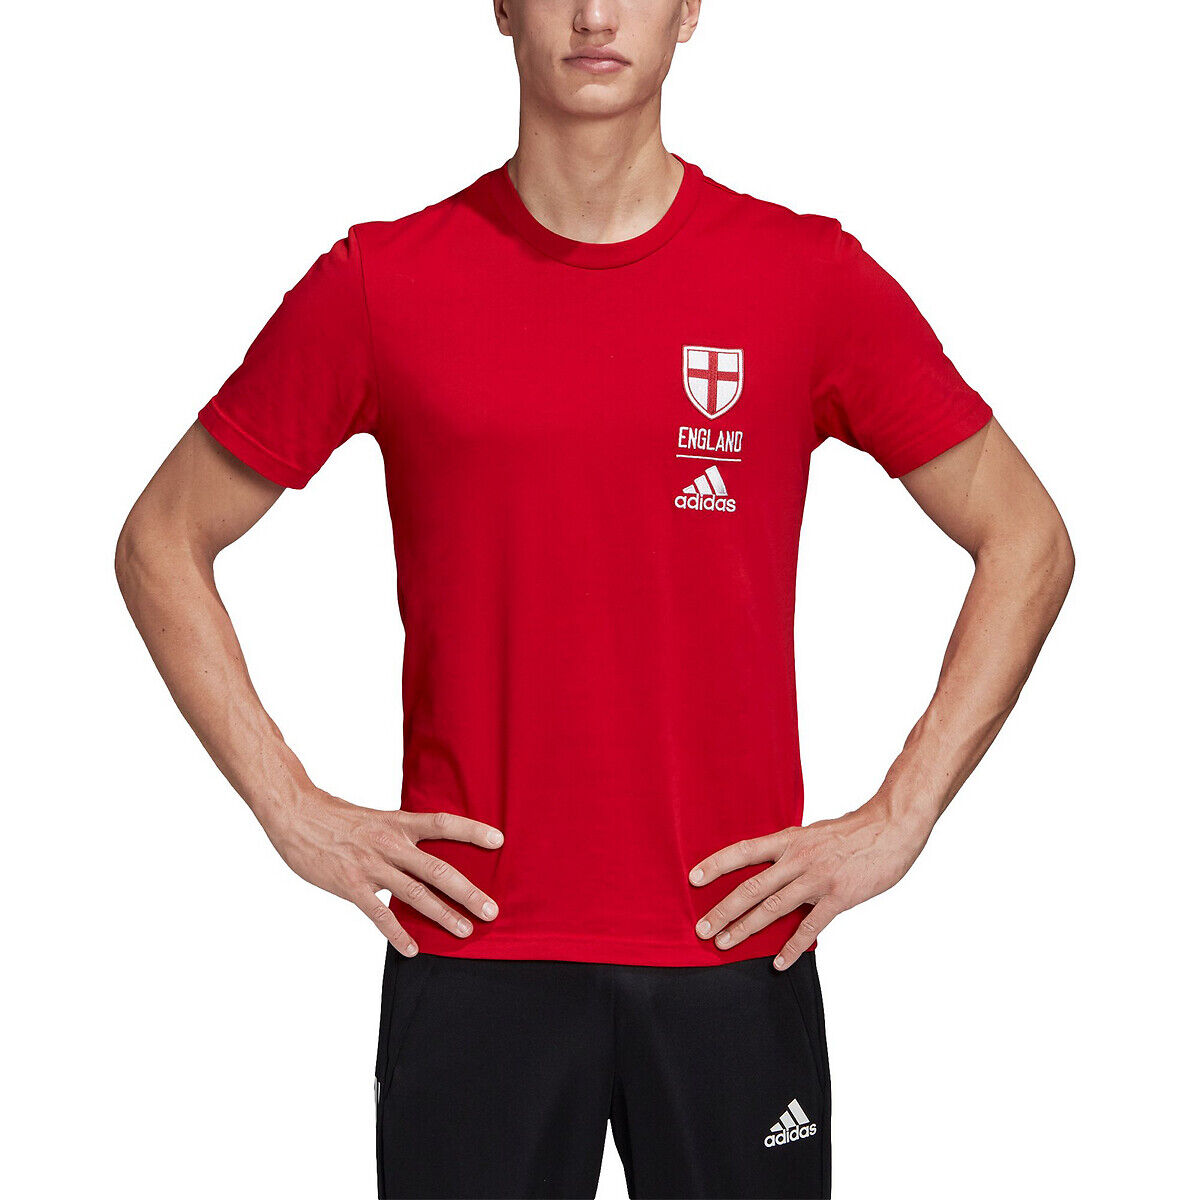 Adidas Performance T-shirt de Inglaterra   Vermelho